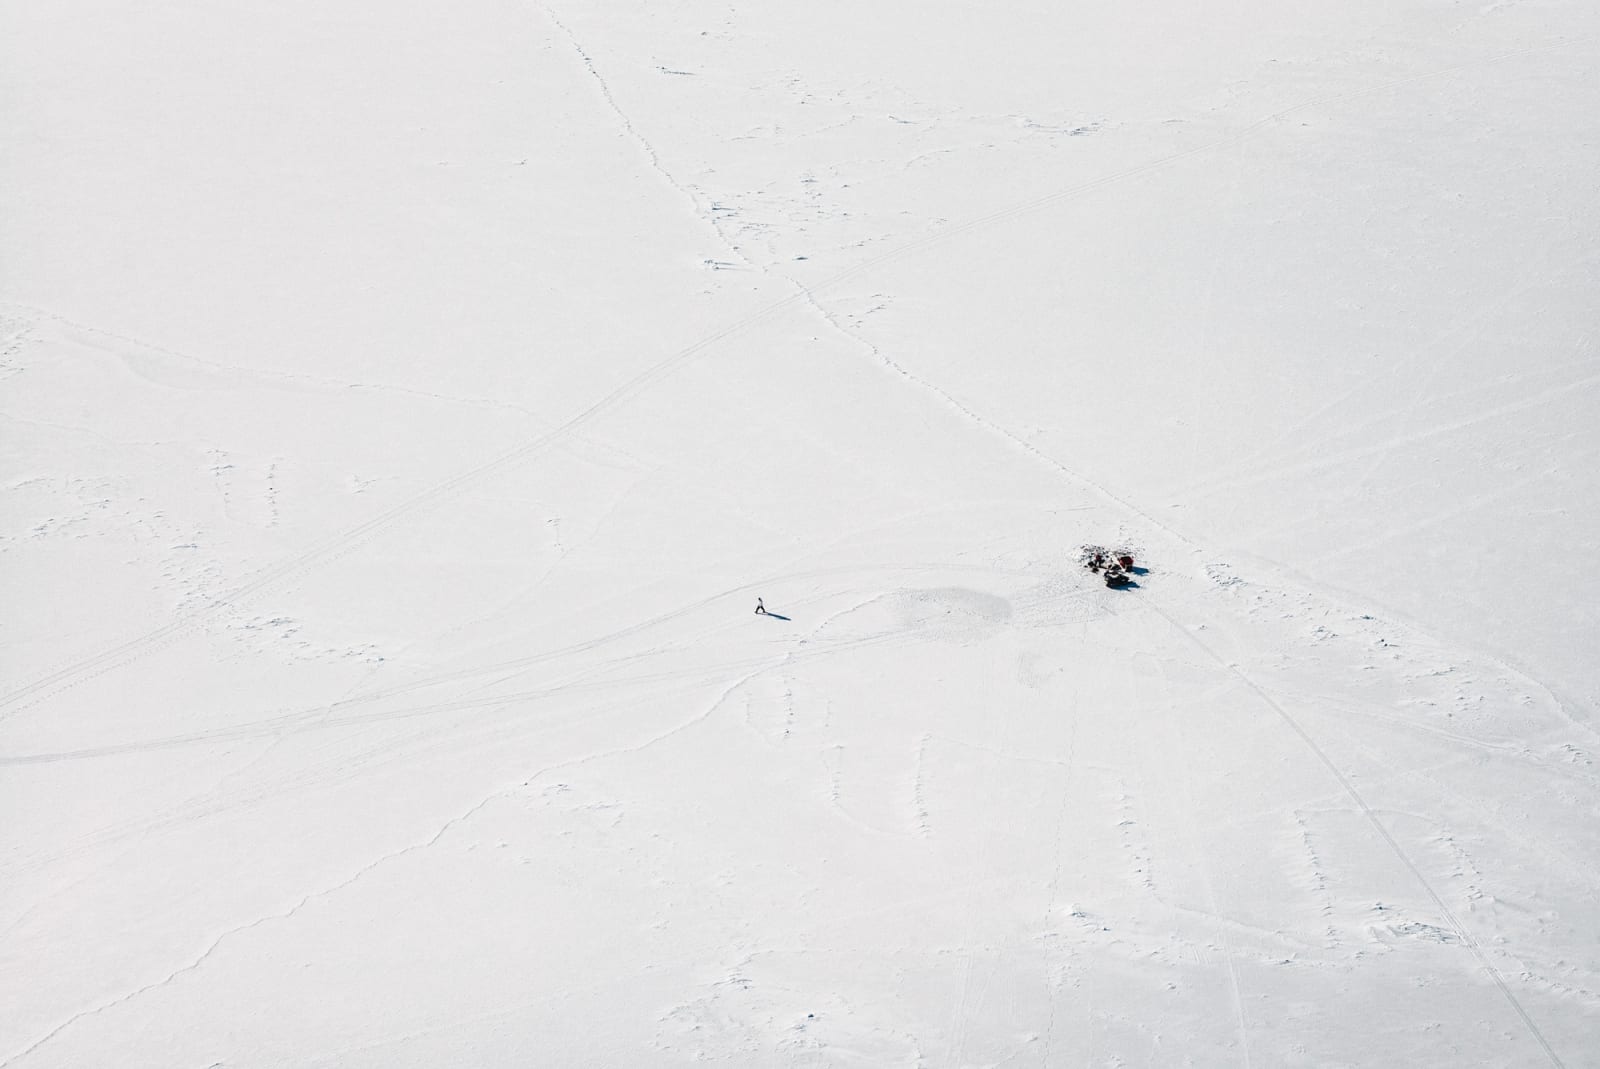 Ciril Jazbec, On Thin Ice #0040, 2014